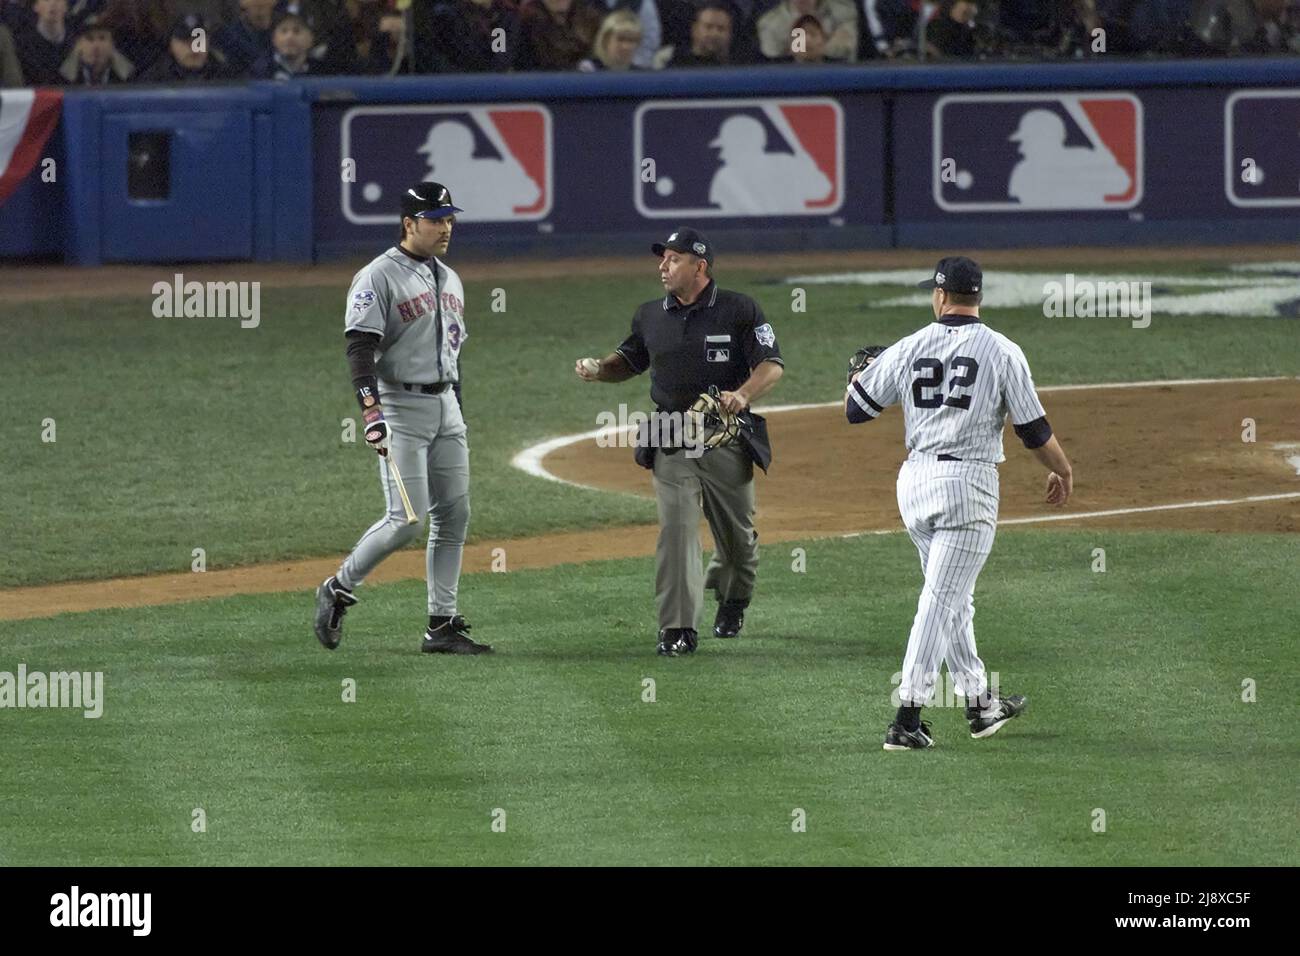 Il batter Mike Piazza dei New York Mets, a sinistra, affronta il lanciatore di New York Yankees Roger Clemens dopo aver gettato un matto durante la World Series Game 1 allo Yankees Stadium di New York il 22 ottobre 2000. Home piatto umpire Charlie Reliford è mostrato al centro. Foto di Francis Specker Foto Stock